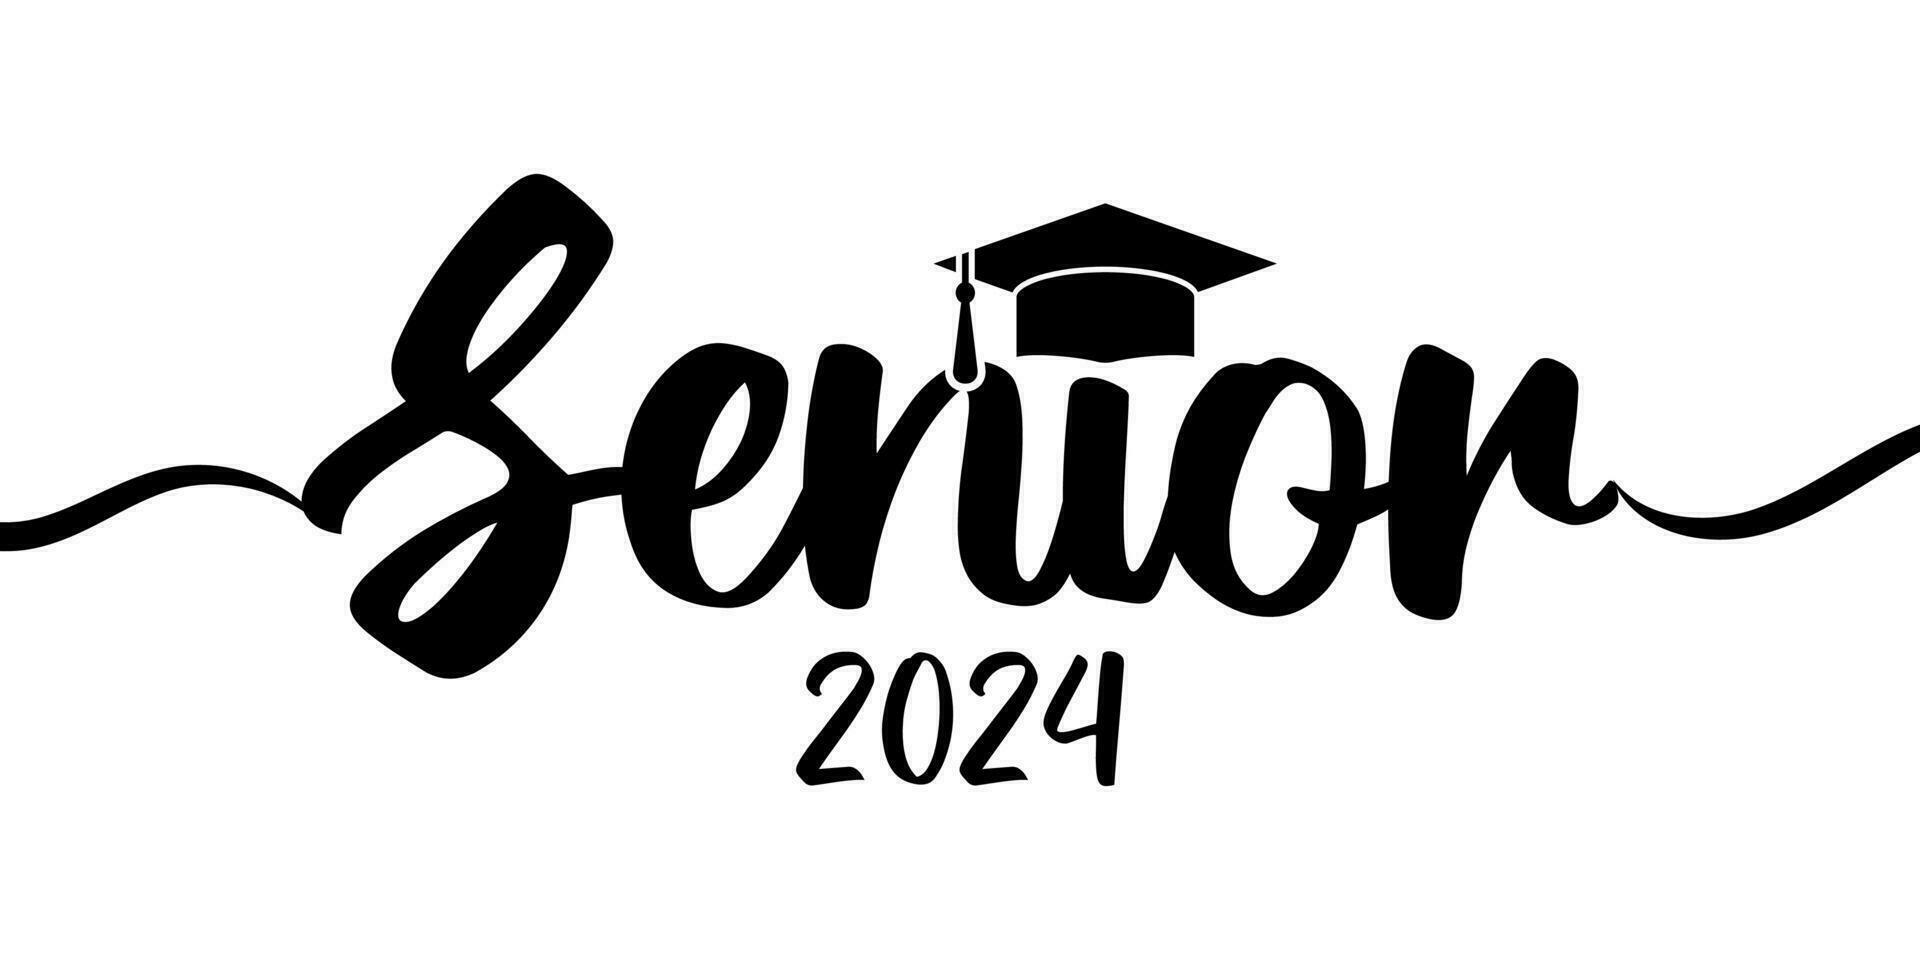 Senior 2024 tipografia. Preto texto isolado no branco fundo. vetor ilustração do uma graduando classe do 2024. gráficos elementos para Camisetas, e a idéia para a placa